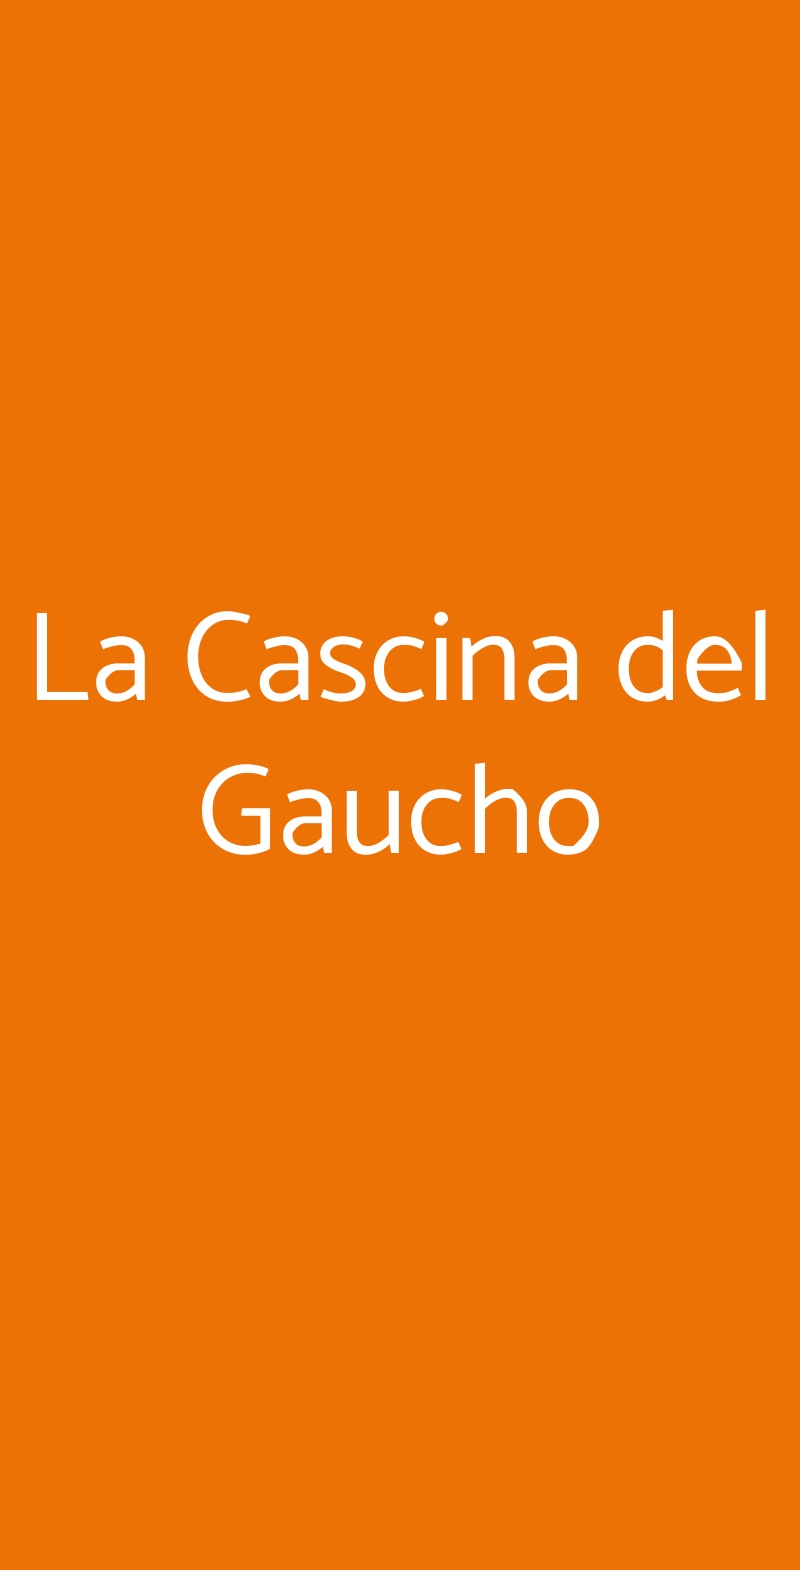 La Cascina del Gaucho Rimini menù 1 pagina